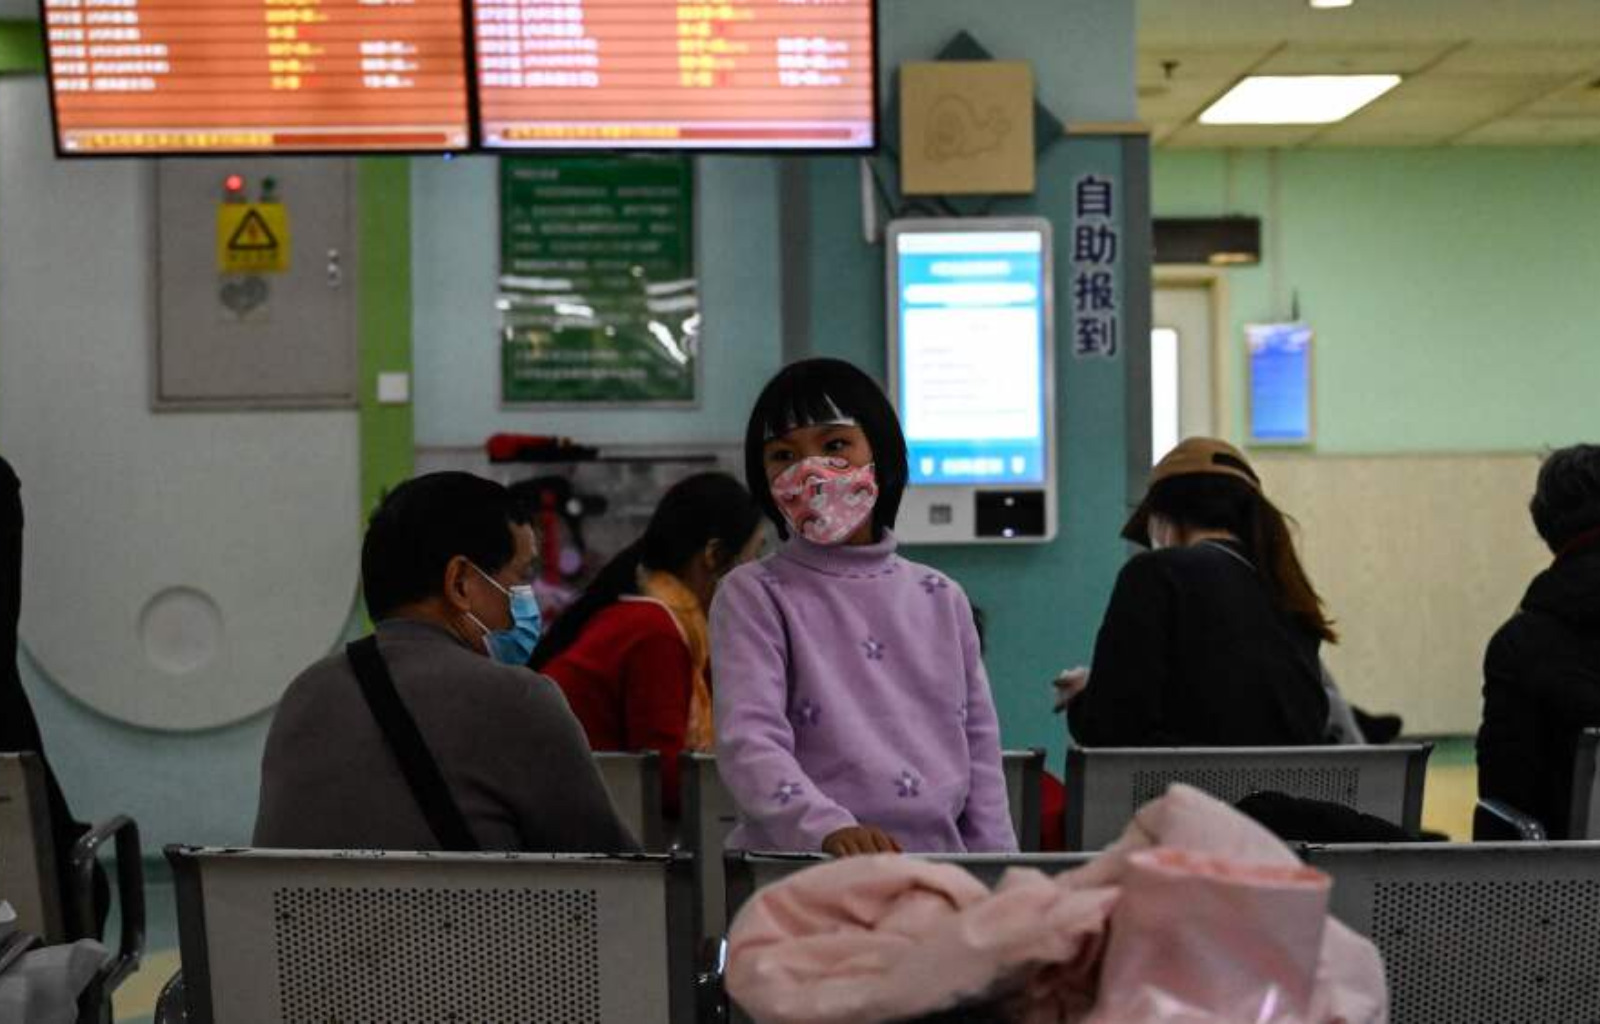 Pacientes en hospital de China en espera de asistencia, tras contraer enfermedades respiratorias. FOTO: Fuente externa.